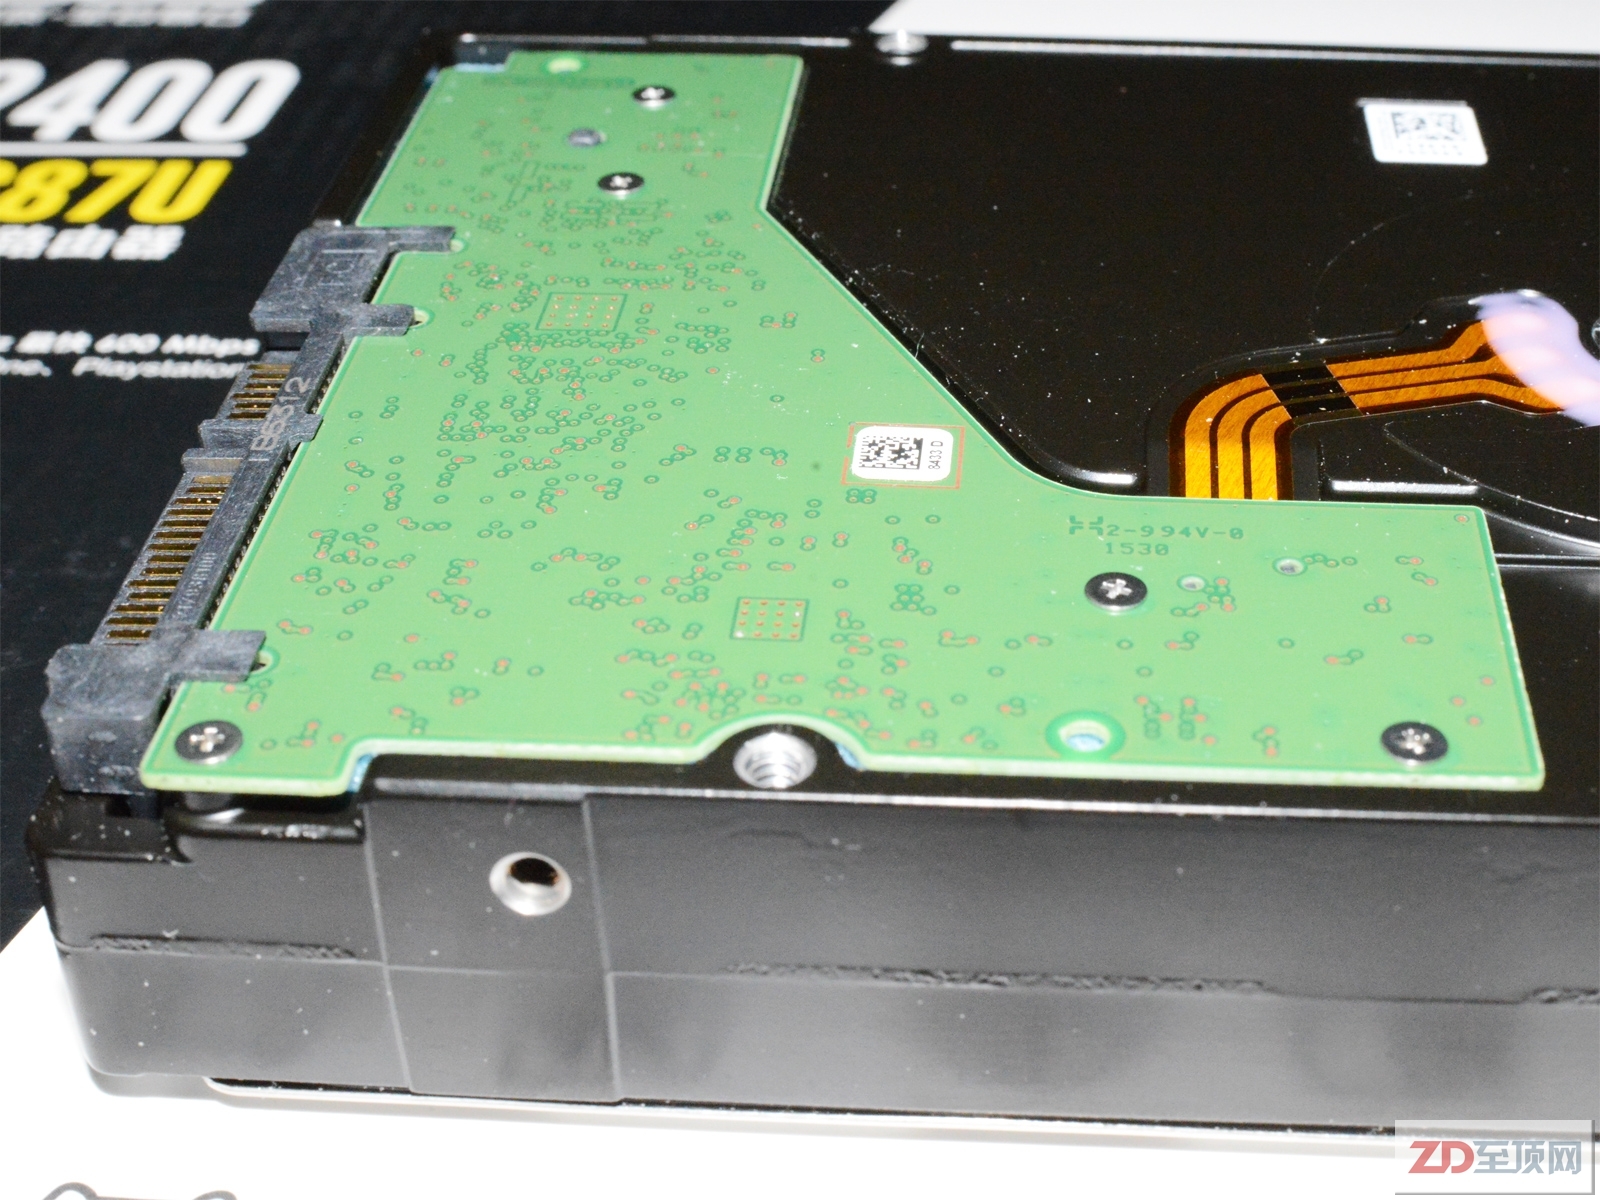 希捷Enterprise NAS HDD 8TB硬盘评测